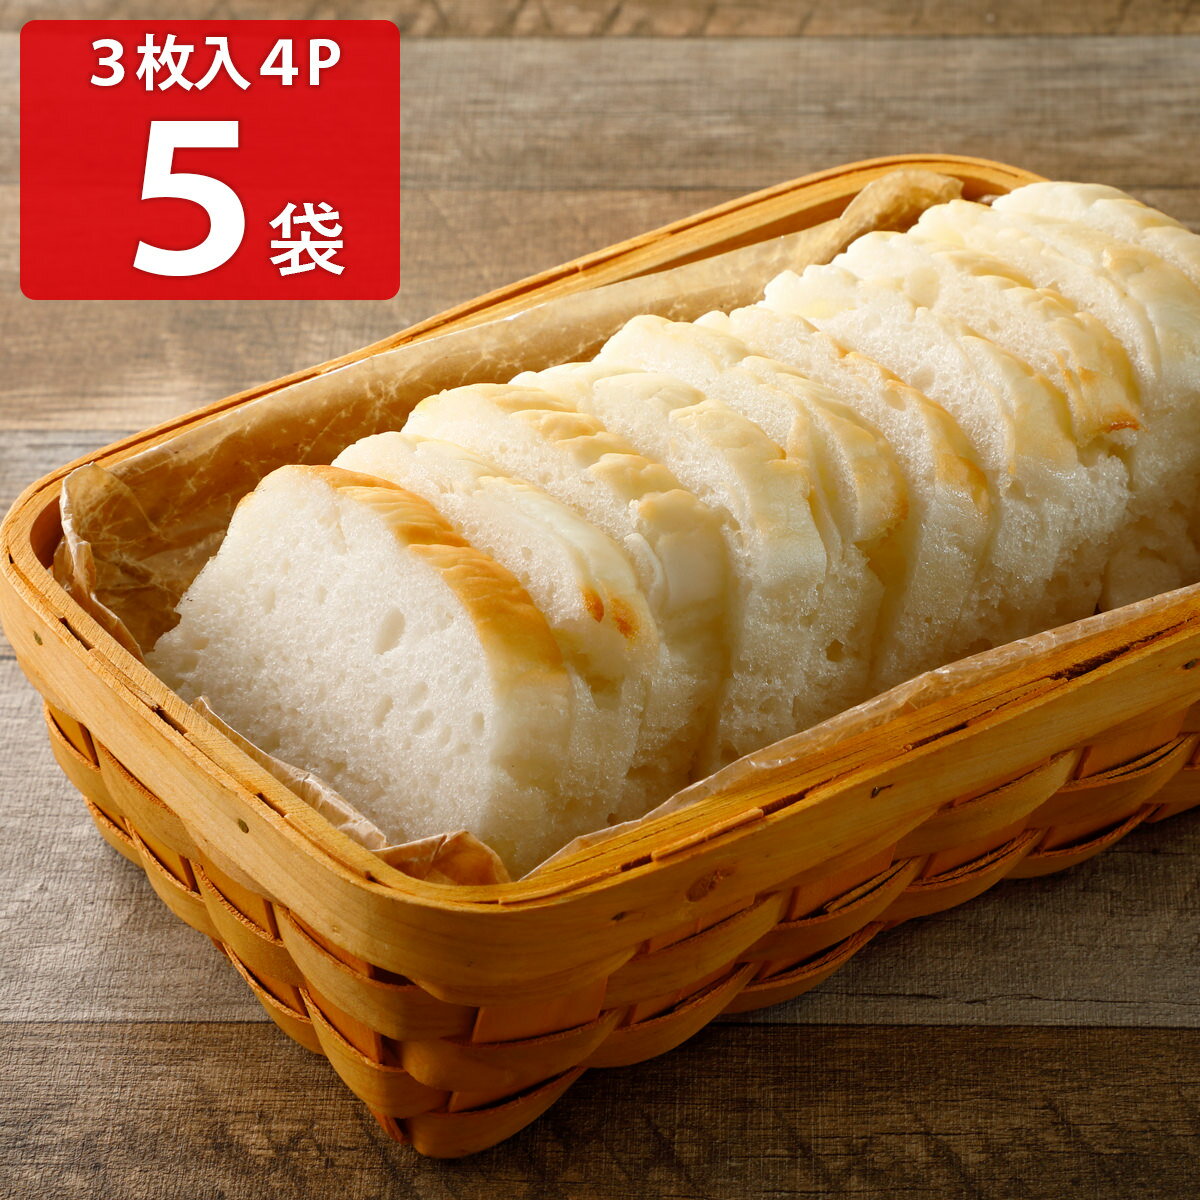 米粉パン みんなの食卓 お米で作ったしかくいパン 3枚入4袋5パックセット パン グルテンフリー 米粉パン 食パン冷凍パン アレルギー対応 お米パン 個包装